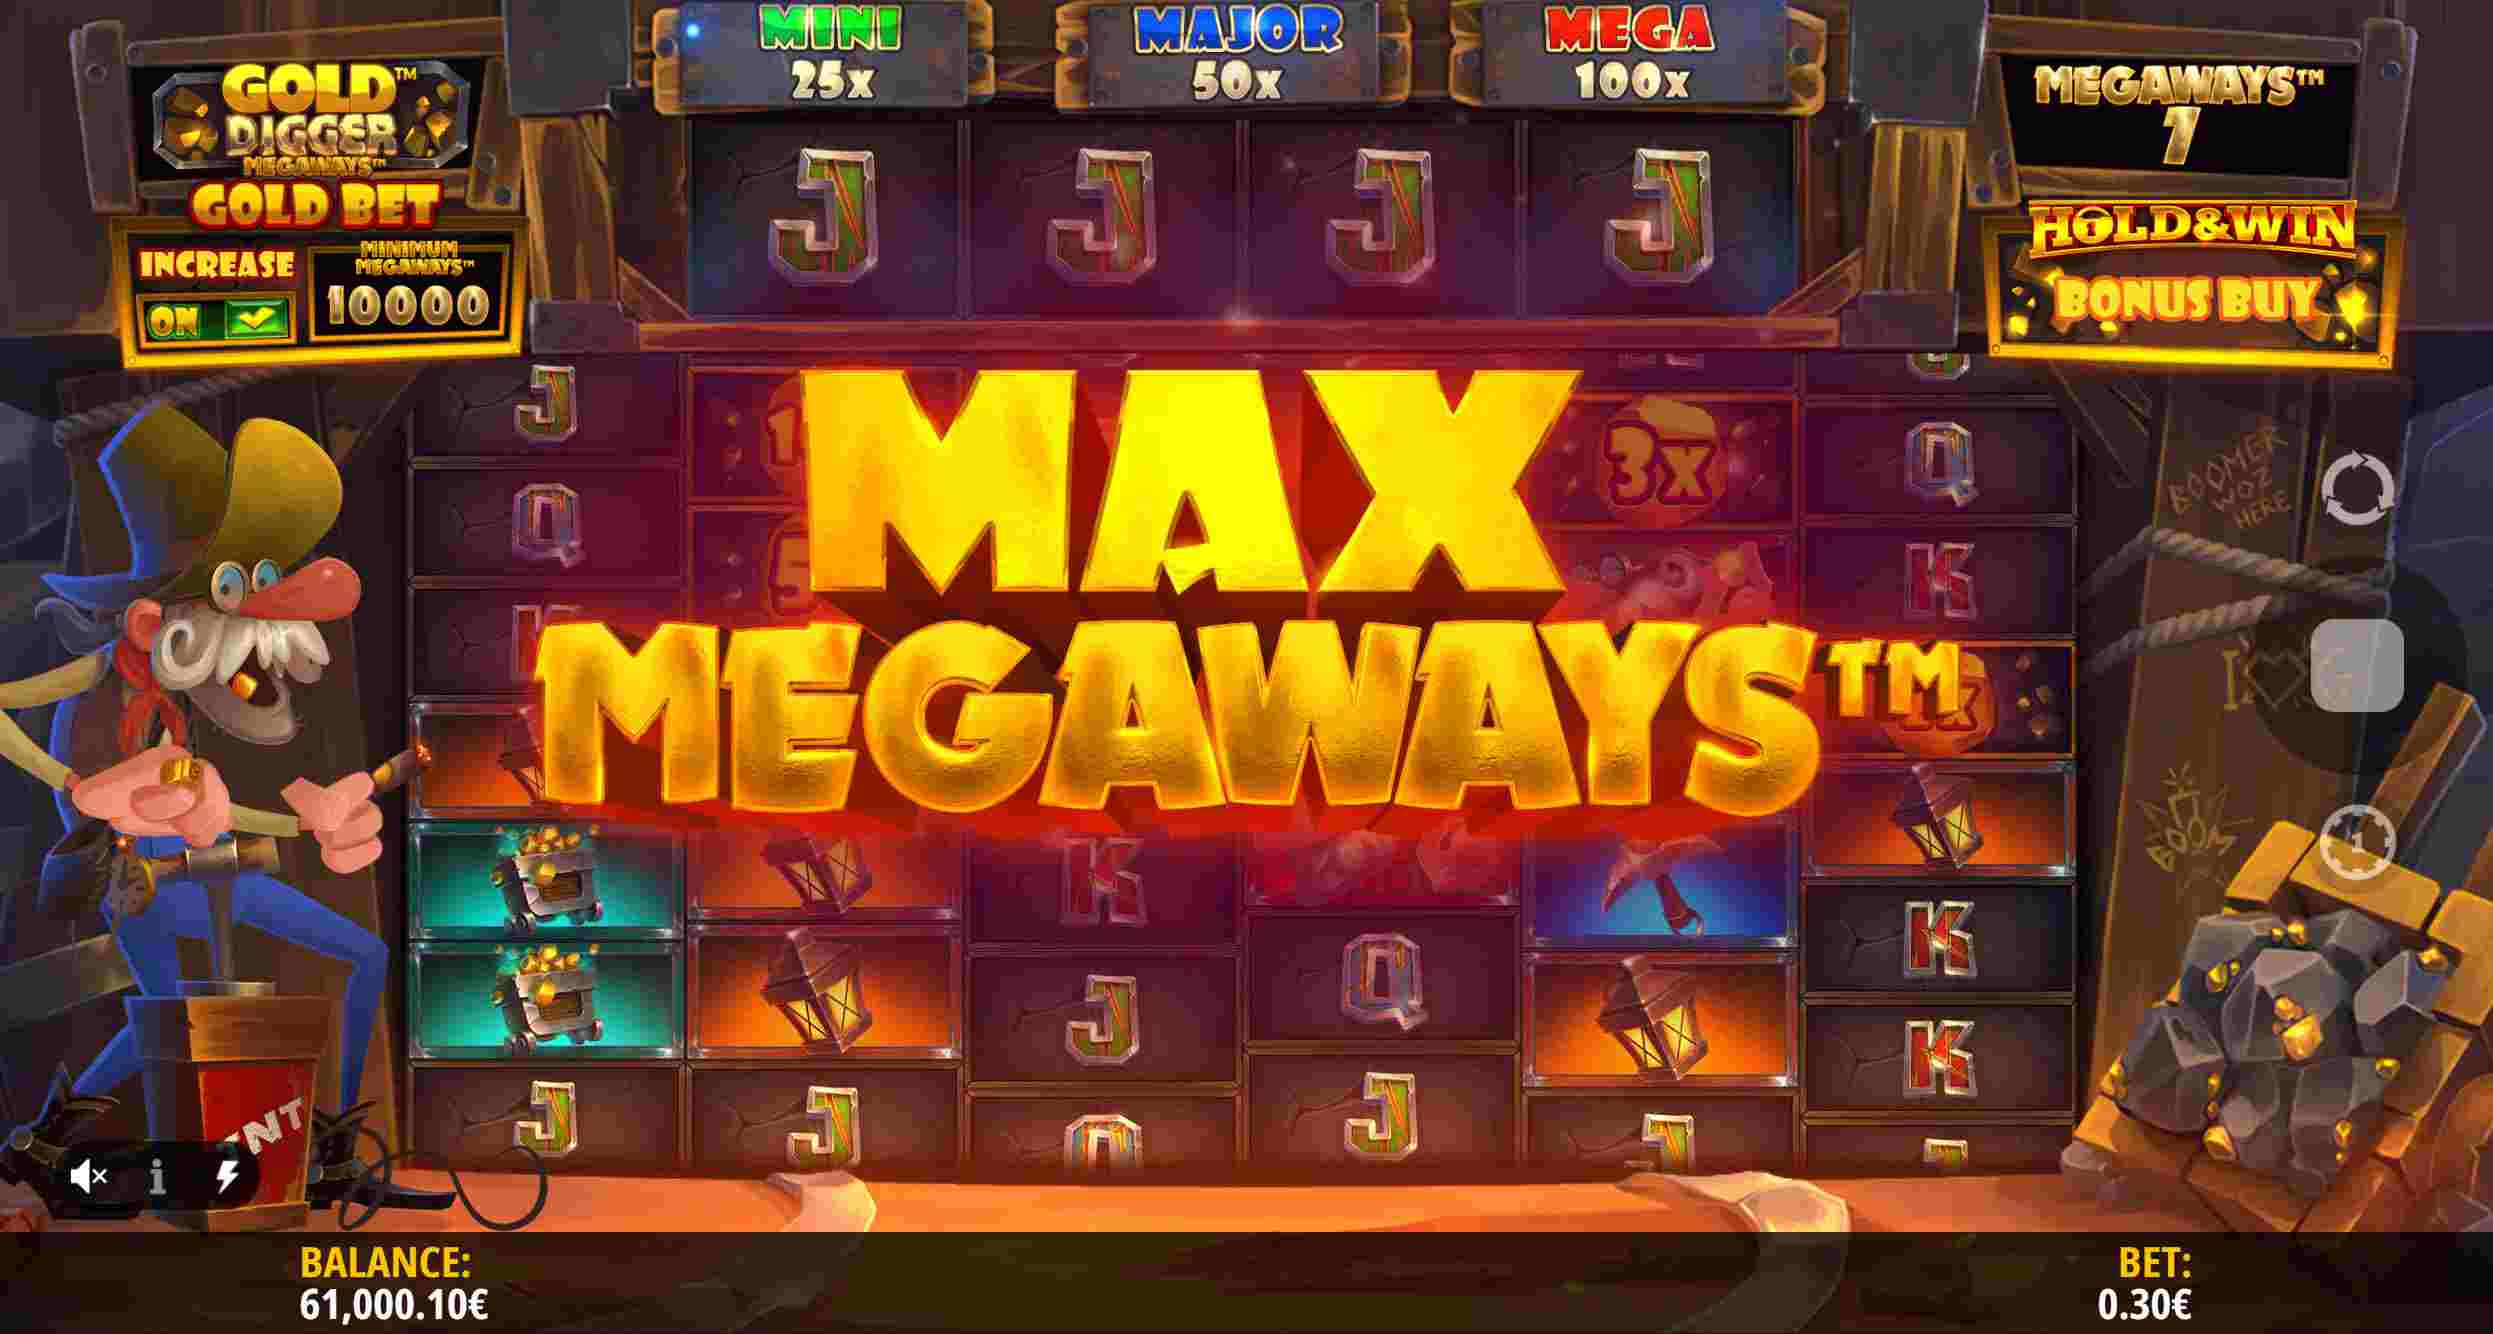 Gold Digger Megaways - Max Megaways Modifier